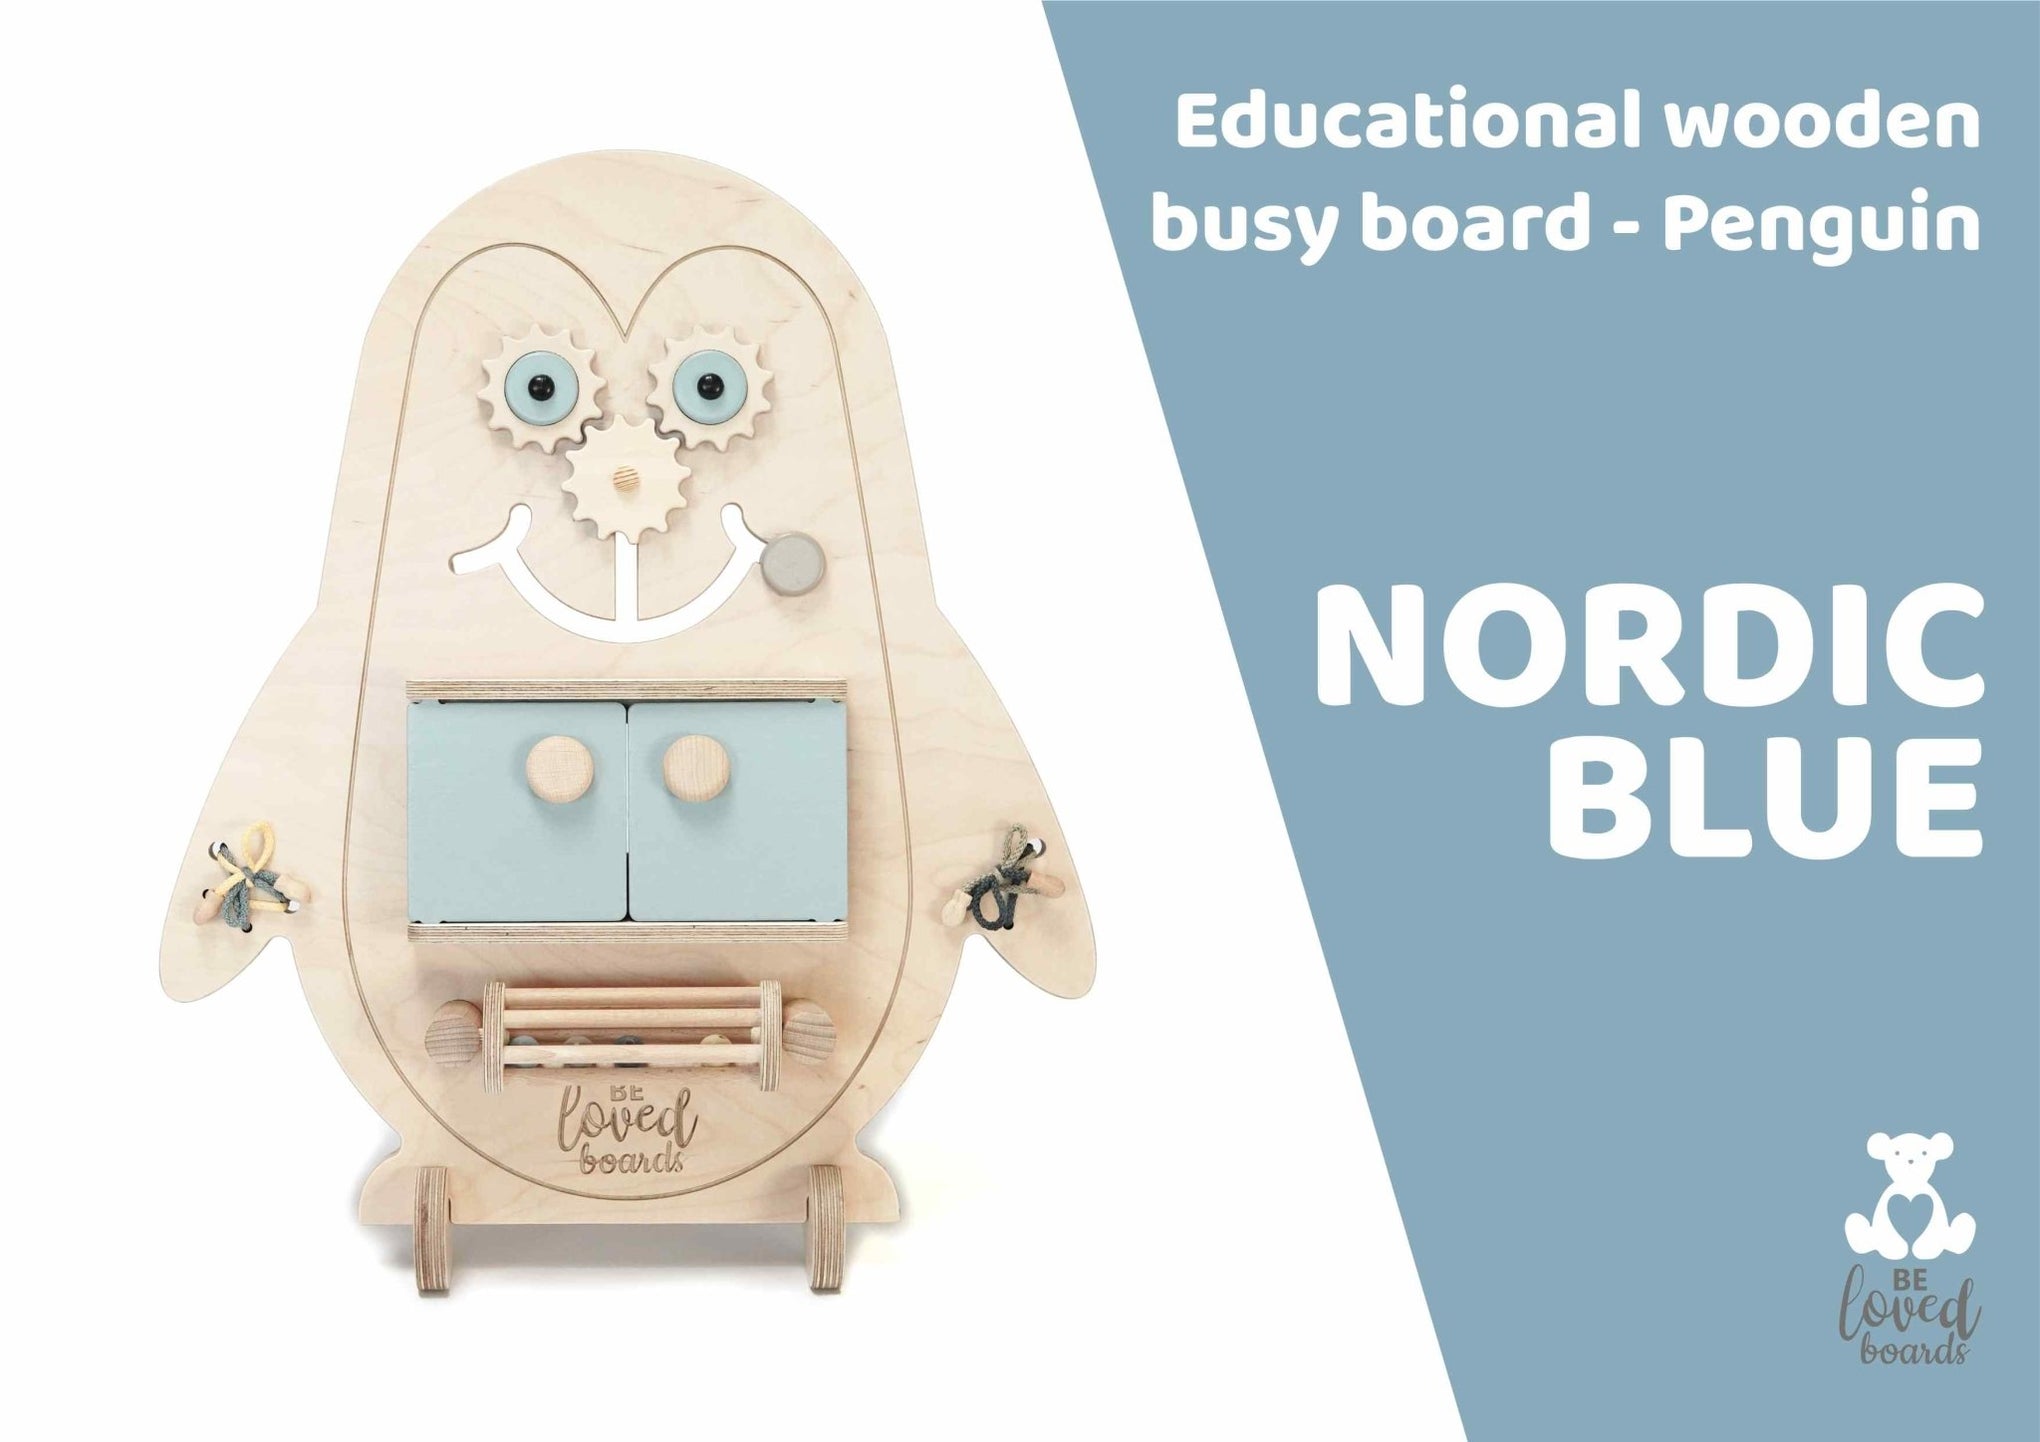 Busy board - Penguin - Beloved boards